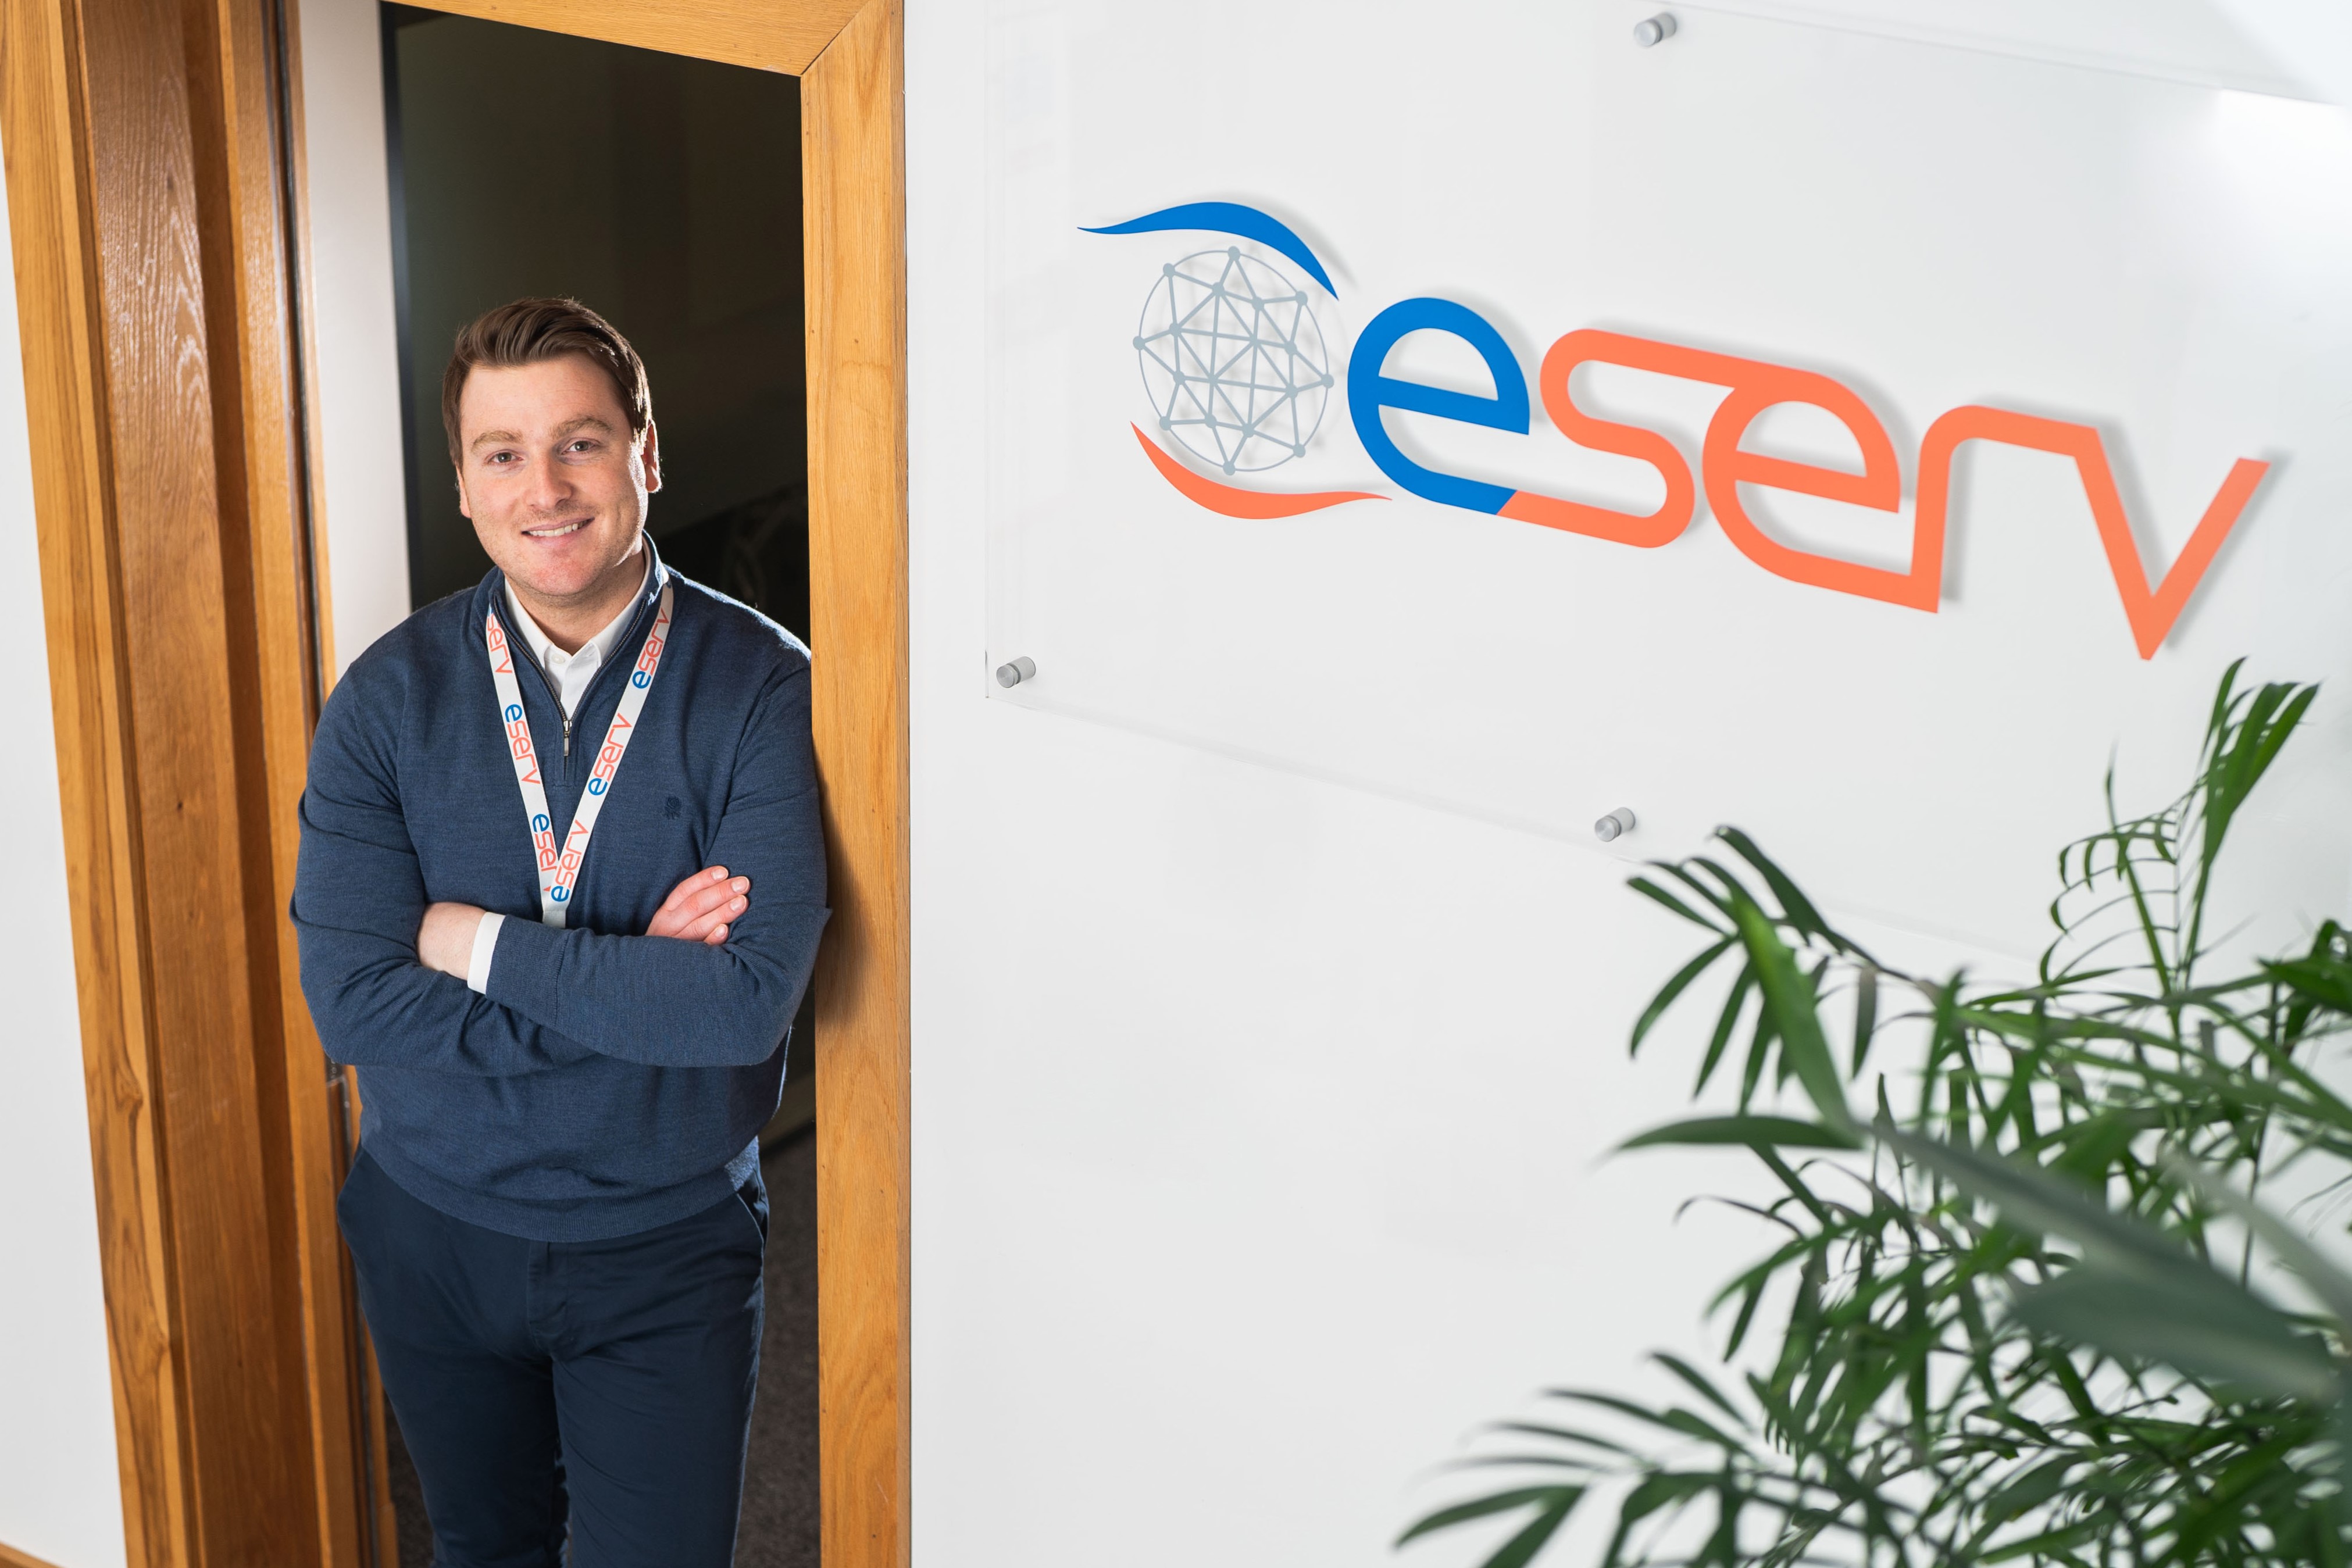 Vespa Capital invests in Eserv